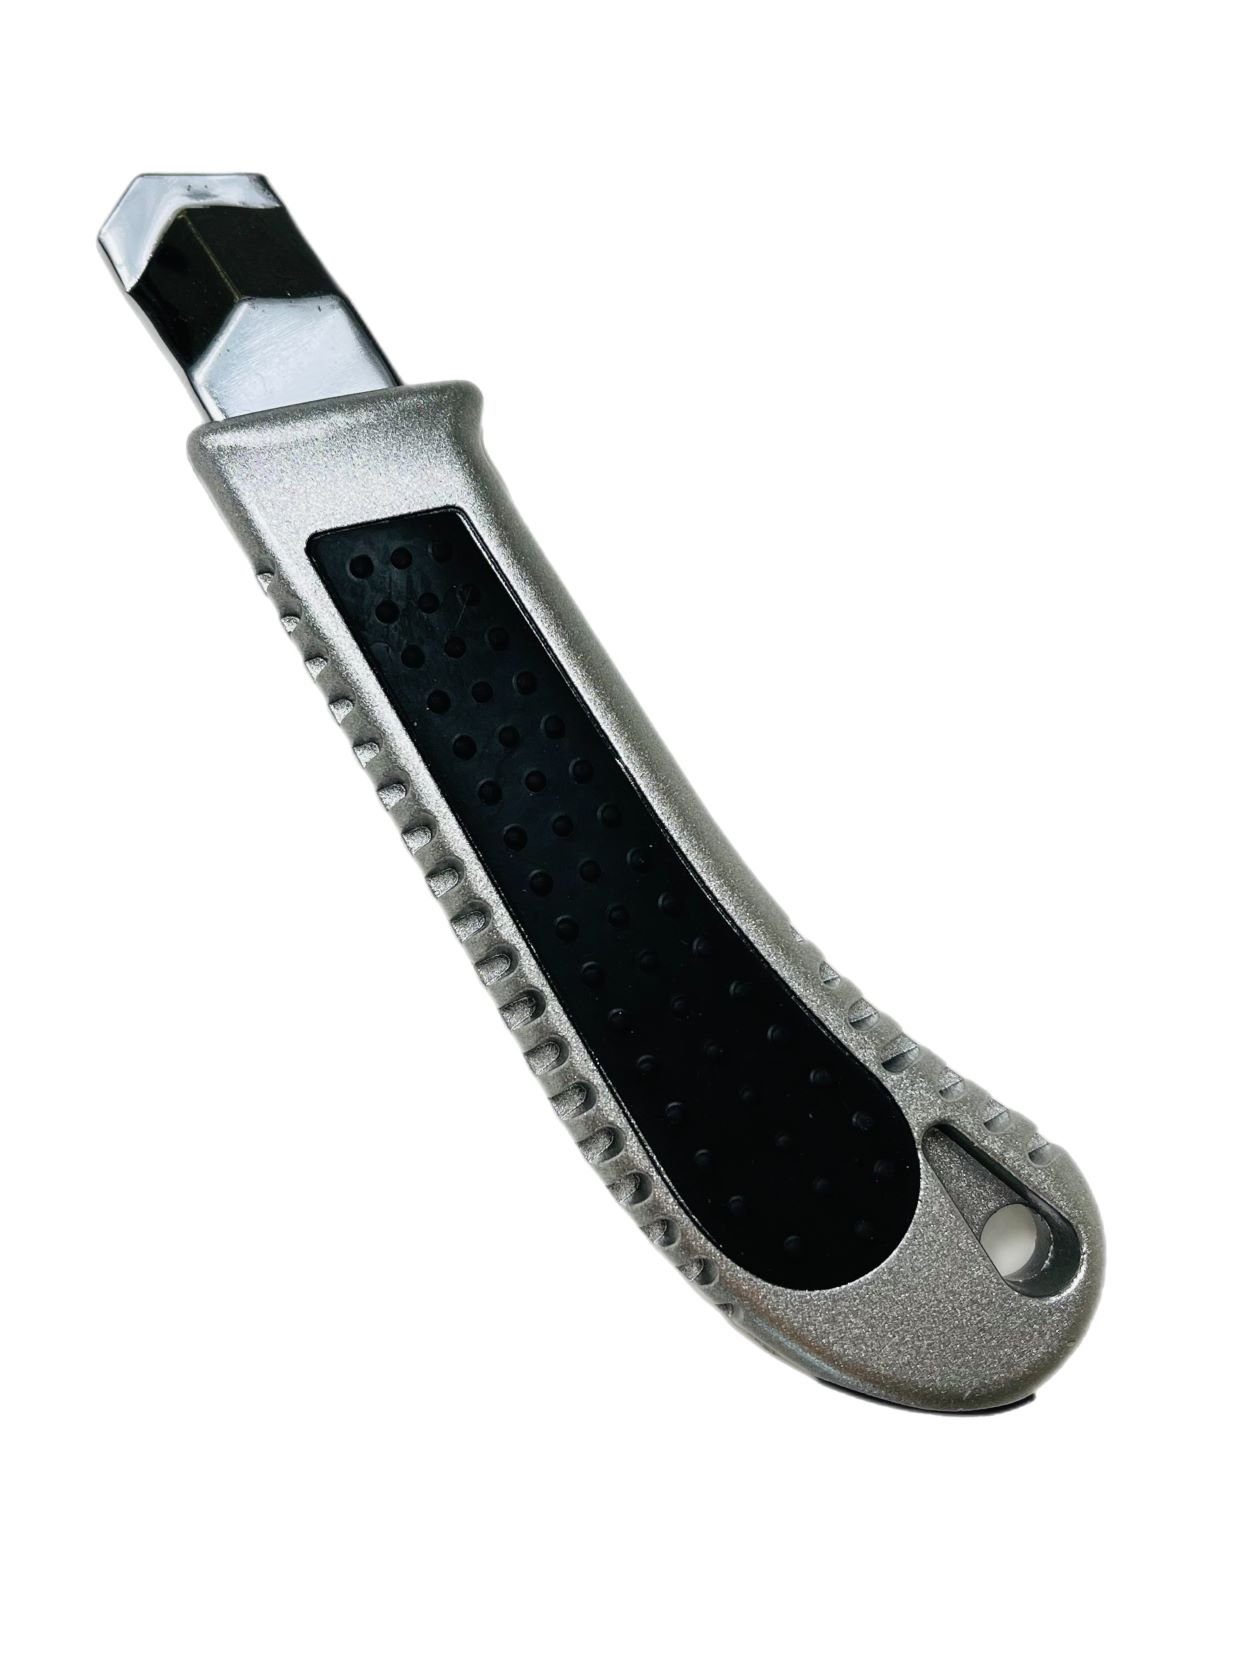 VaGo-Tools Teppichmesser Teppichmesser (Packung) Cutter Stück, Cuttermesser 18mm 144